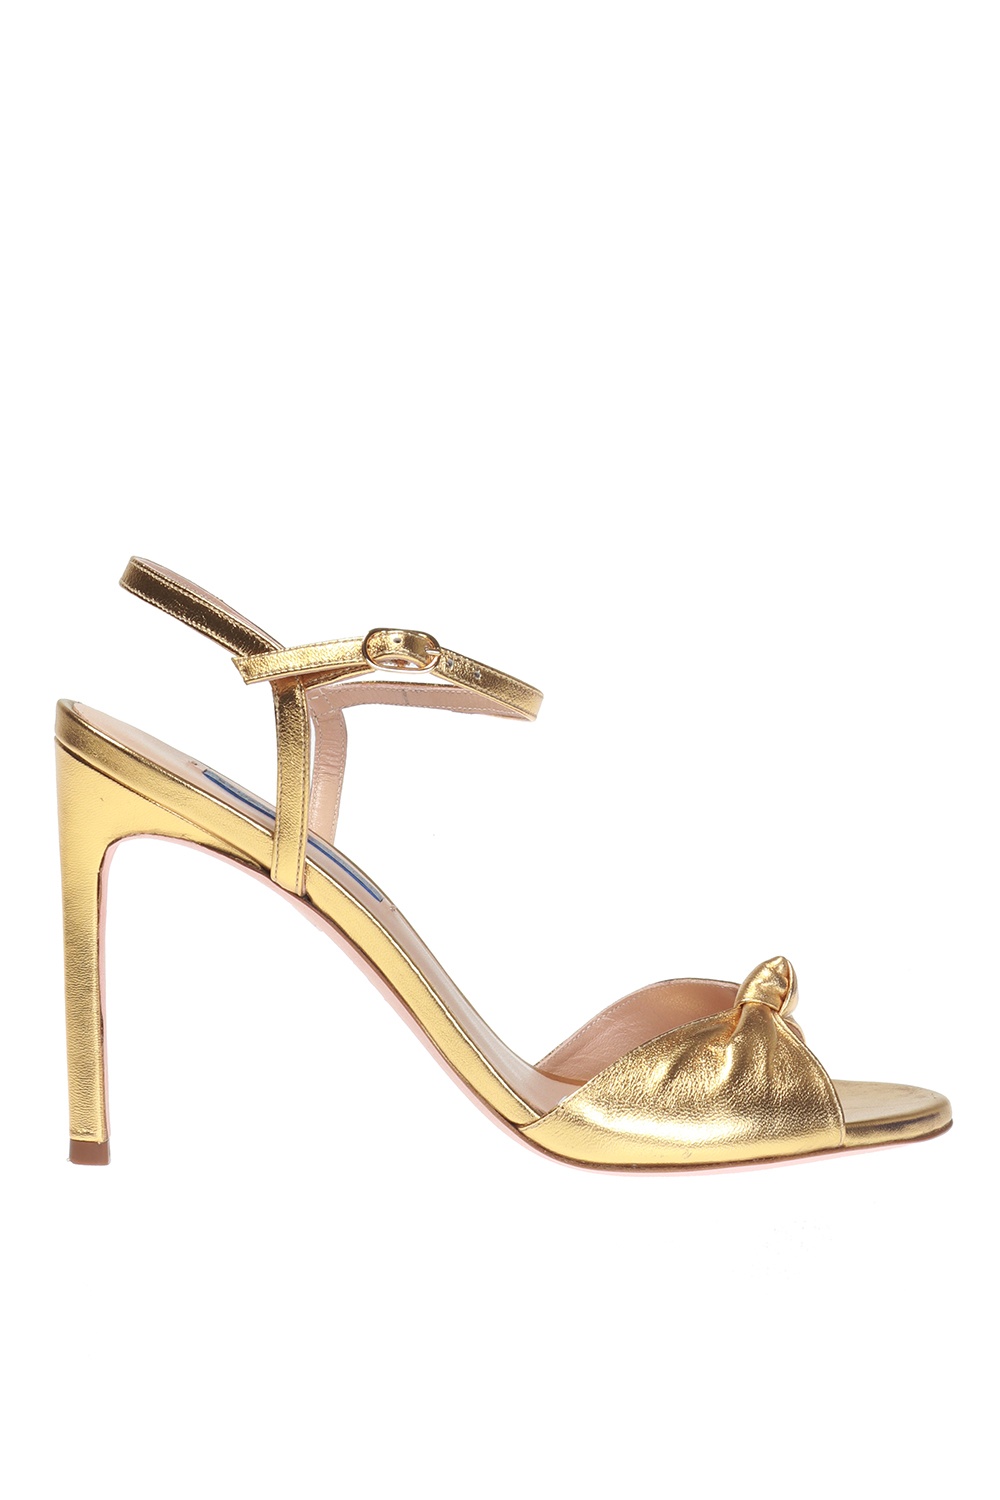 Stuart Weitzman ‘Gloria’ heeled sandals | Women's Shoes | Vitkac